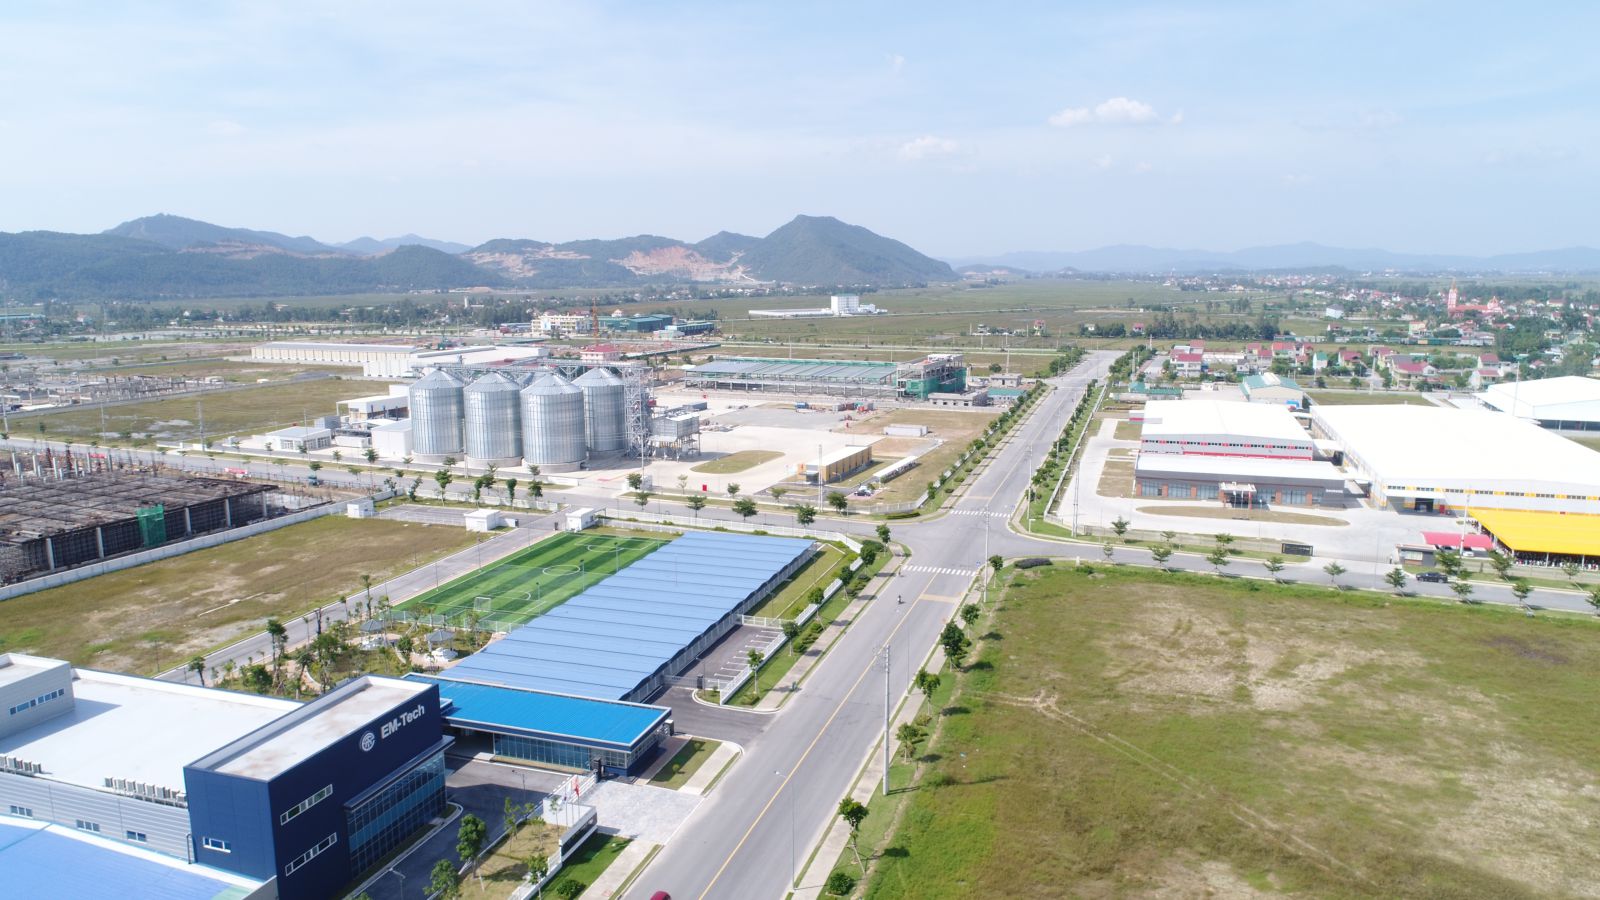 Khu công nghiệp VSIP được hình thành, tạo điểm nhấn cho nguồn vốn FDI thu hút đầu tư vào Nghệ An